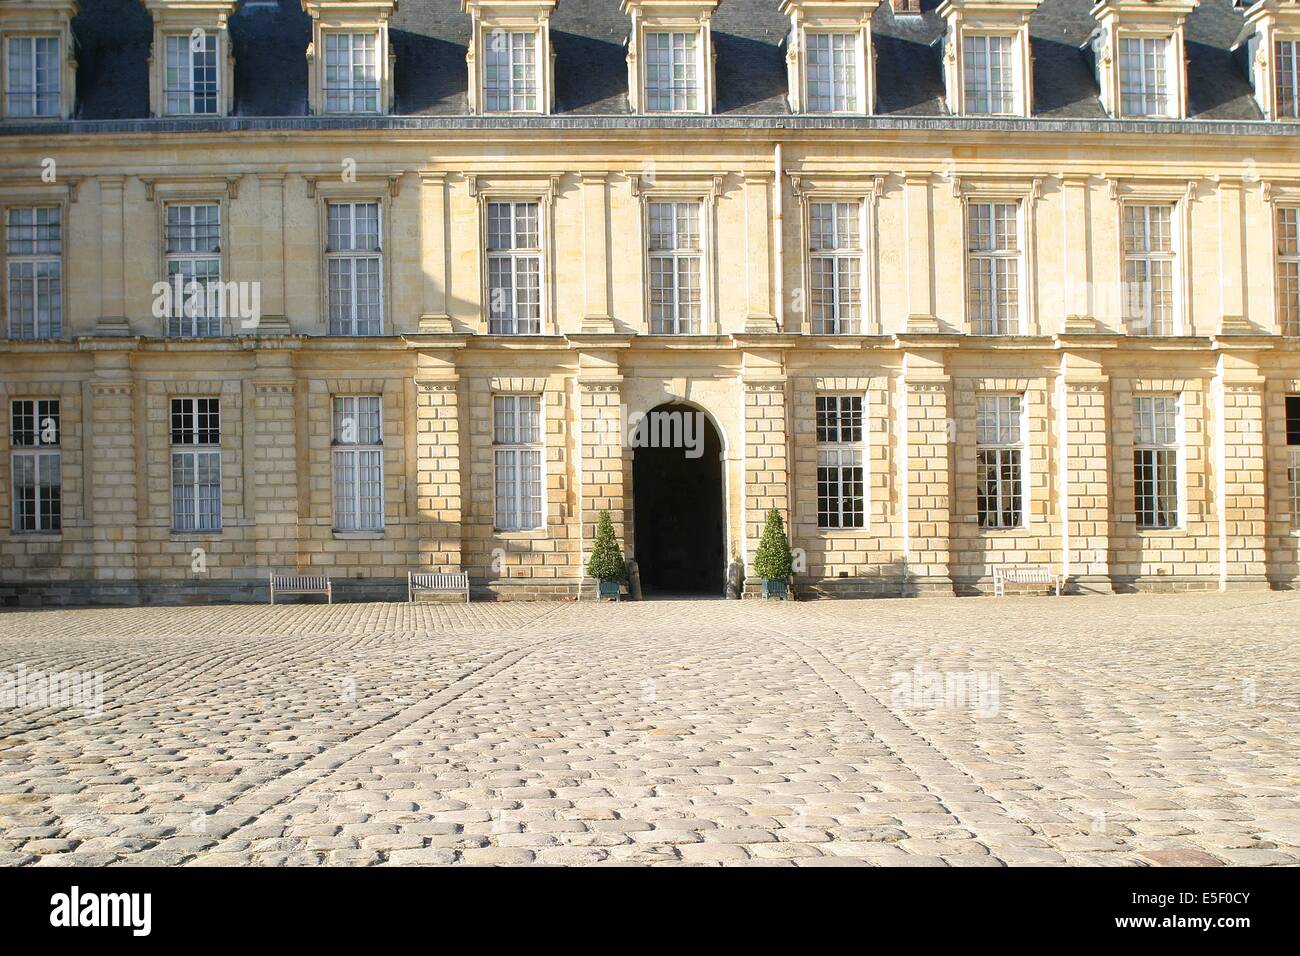 France, region ile de france, seine et marne, fontainebleau, chateau, facade sur jardin, paves, pierre, Napoleon, Stock Photo